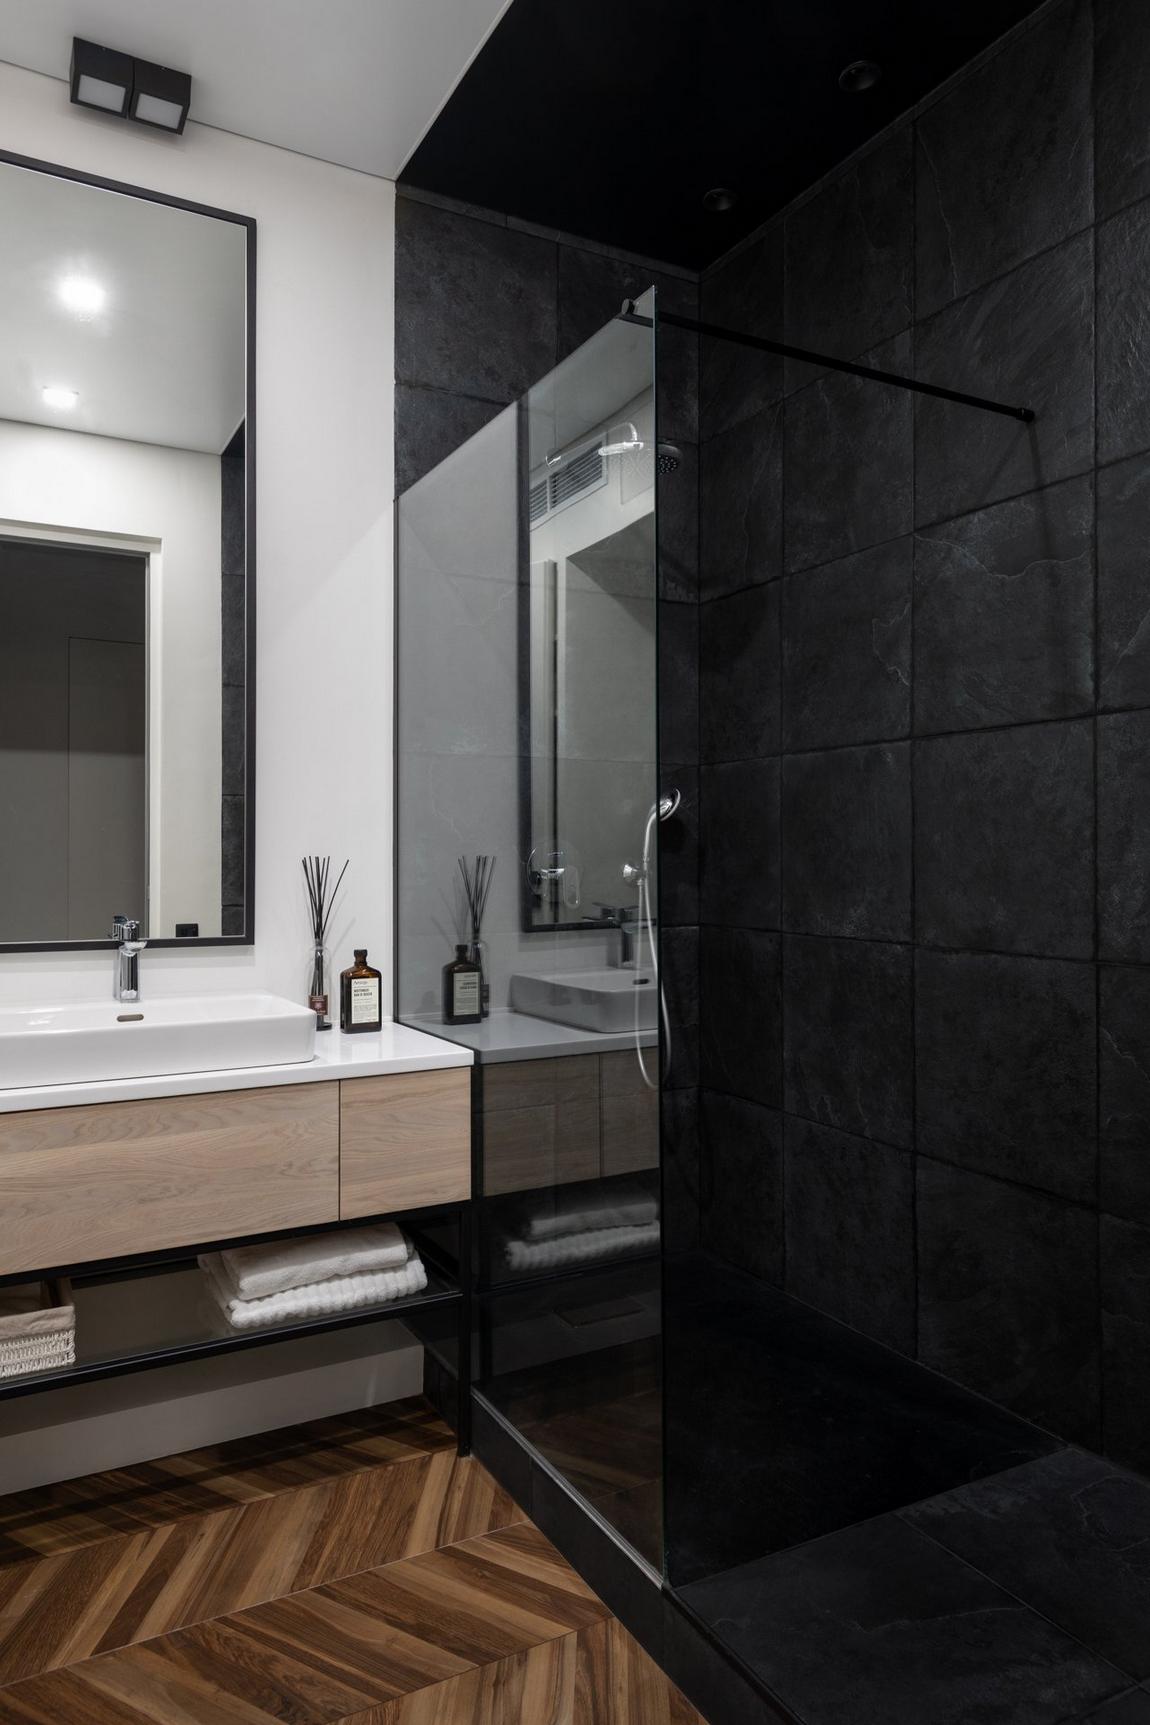 Phòng tắm và nhà vệ sinh được phân vùng bởi gạch lát sàn màu gỗ họa tiết xương cá và màu đen bí ẩn, cách nhau bởi cửa kính trong suốt. Tấm gương lớn trên tường bồn rửa góp phần 'nhân đôi' diện tích và ánh sáng cho căn phòng không cửa sổ.